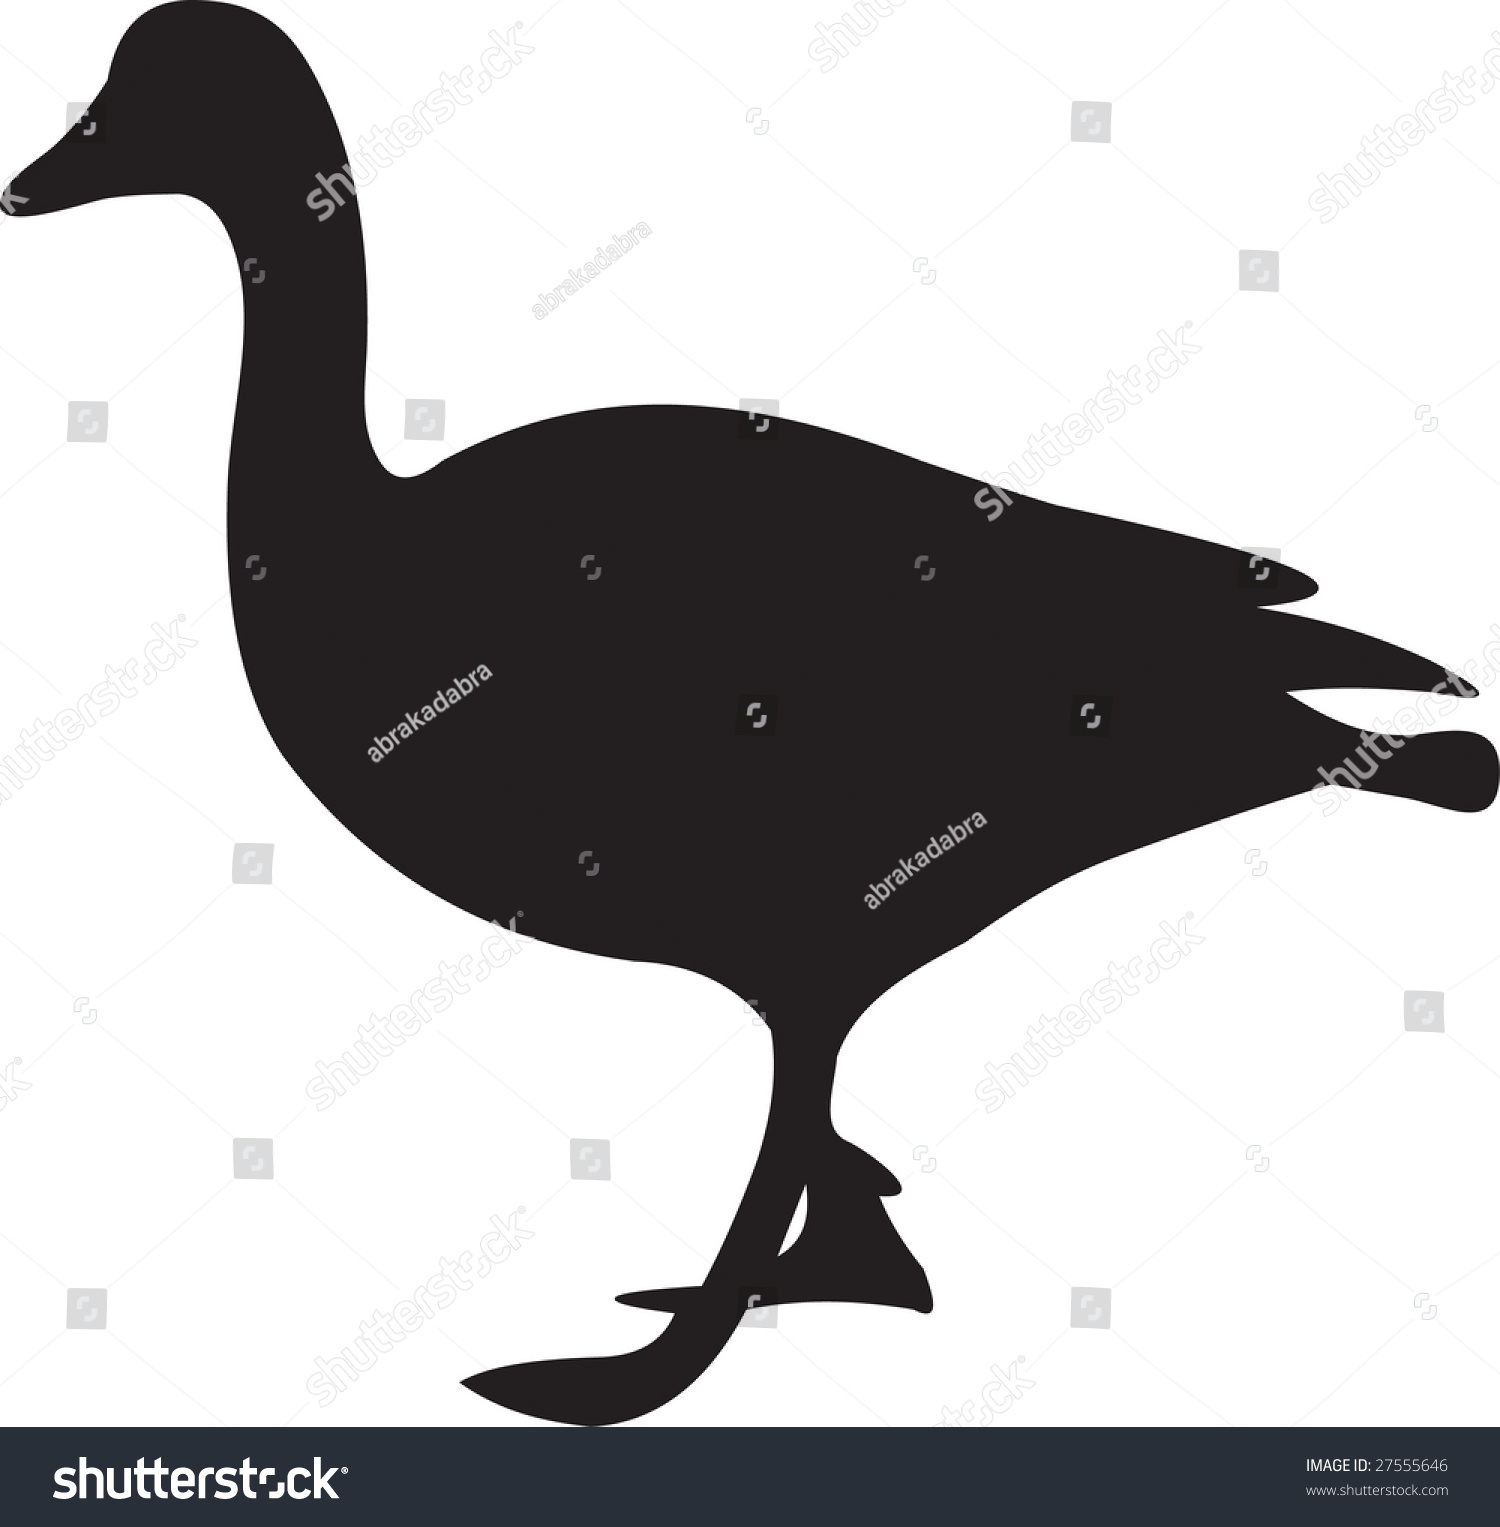 Goose Vector - 27555646 : Shutterstock